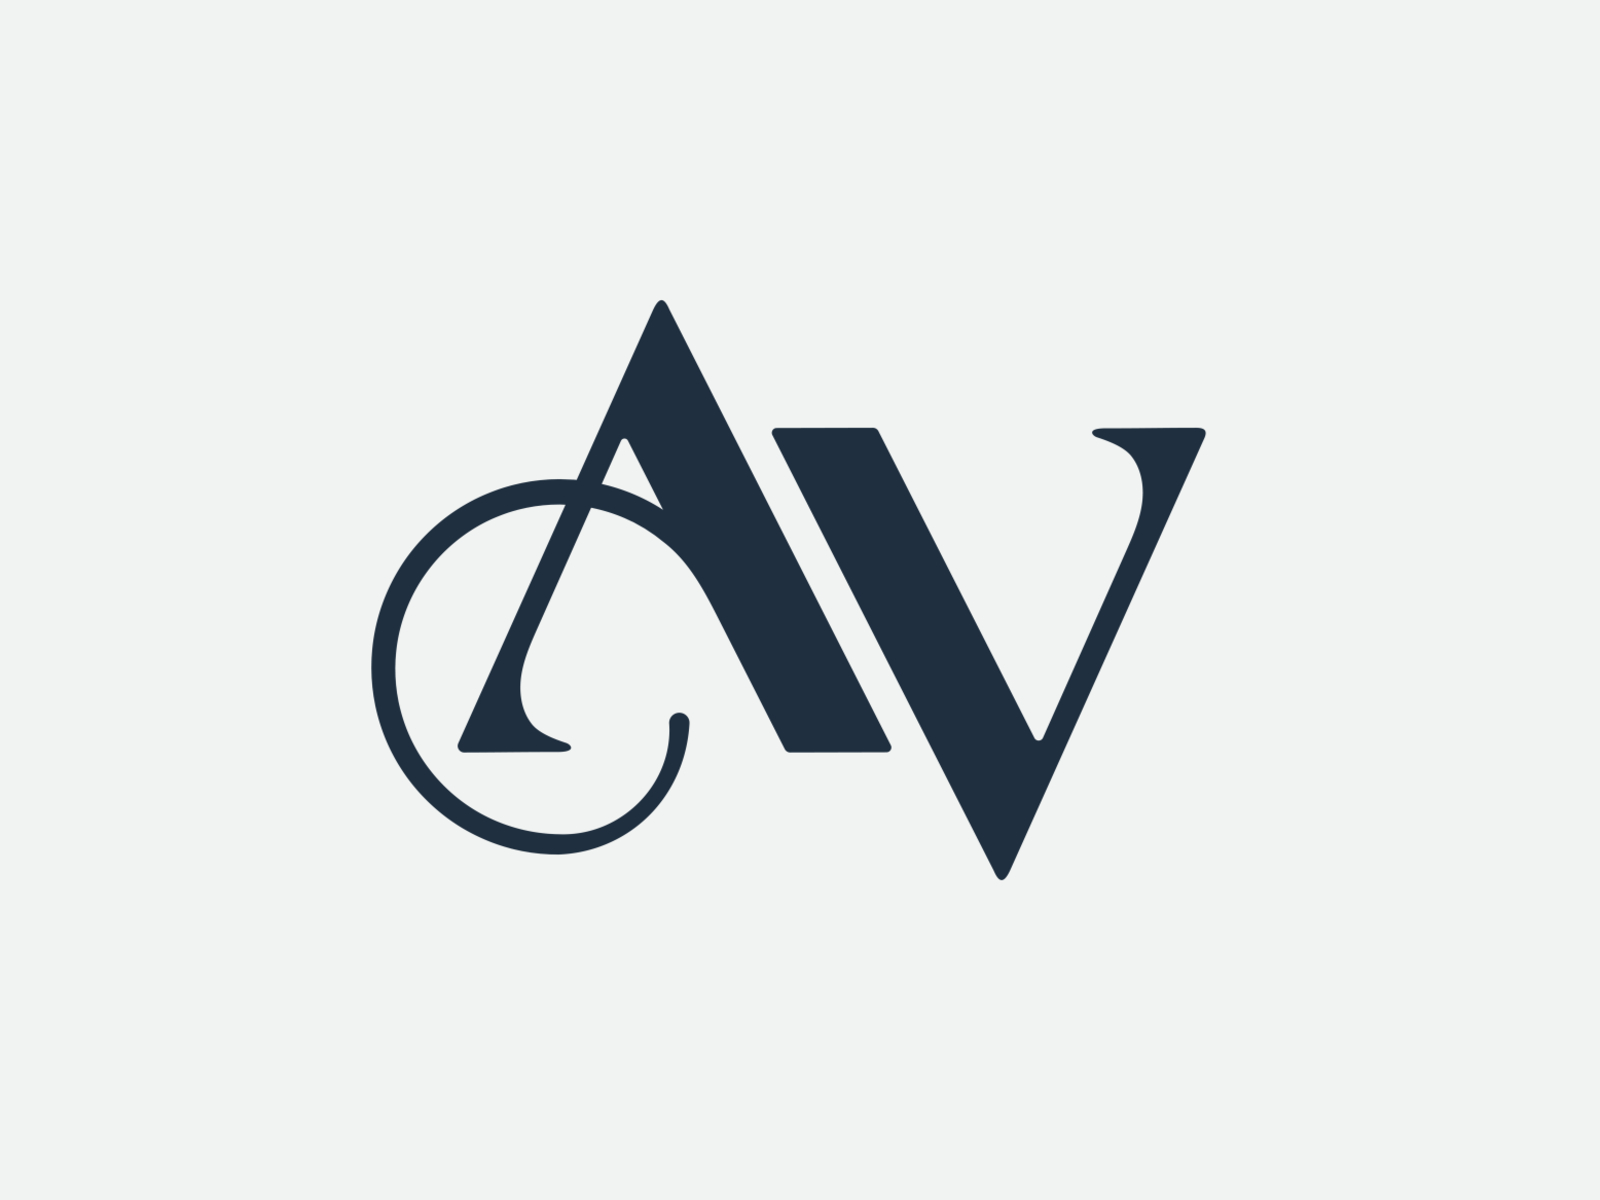 AV logo concept by chris may sikora on Dribbble